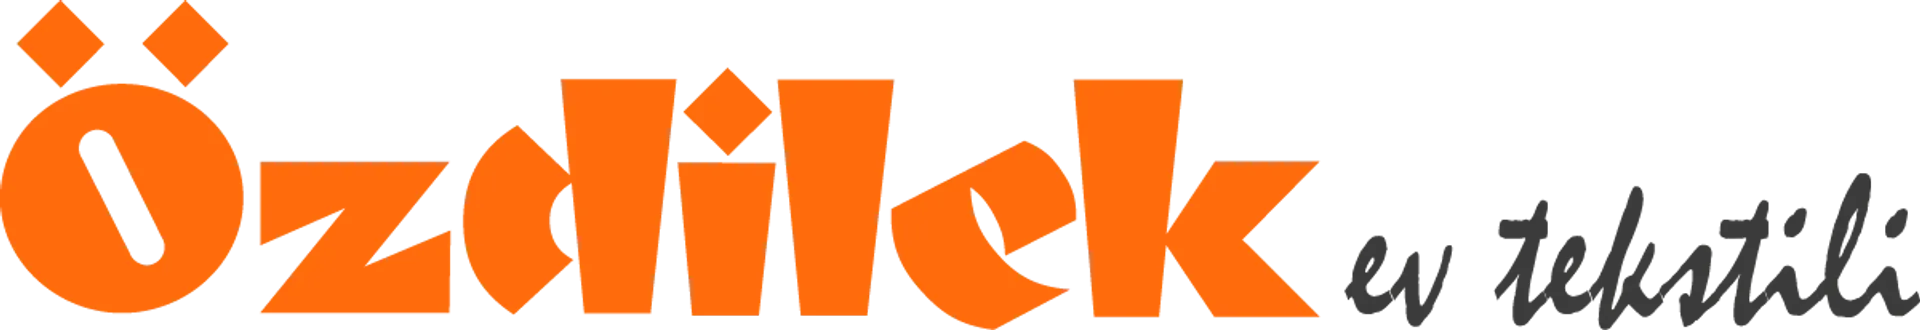 ÖZDILEK EV TEKSTILI logo